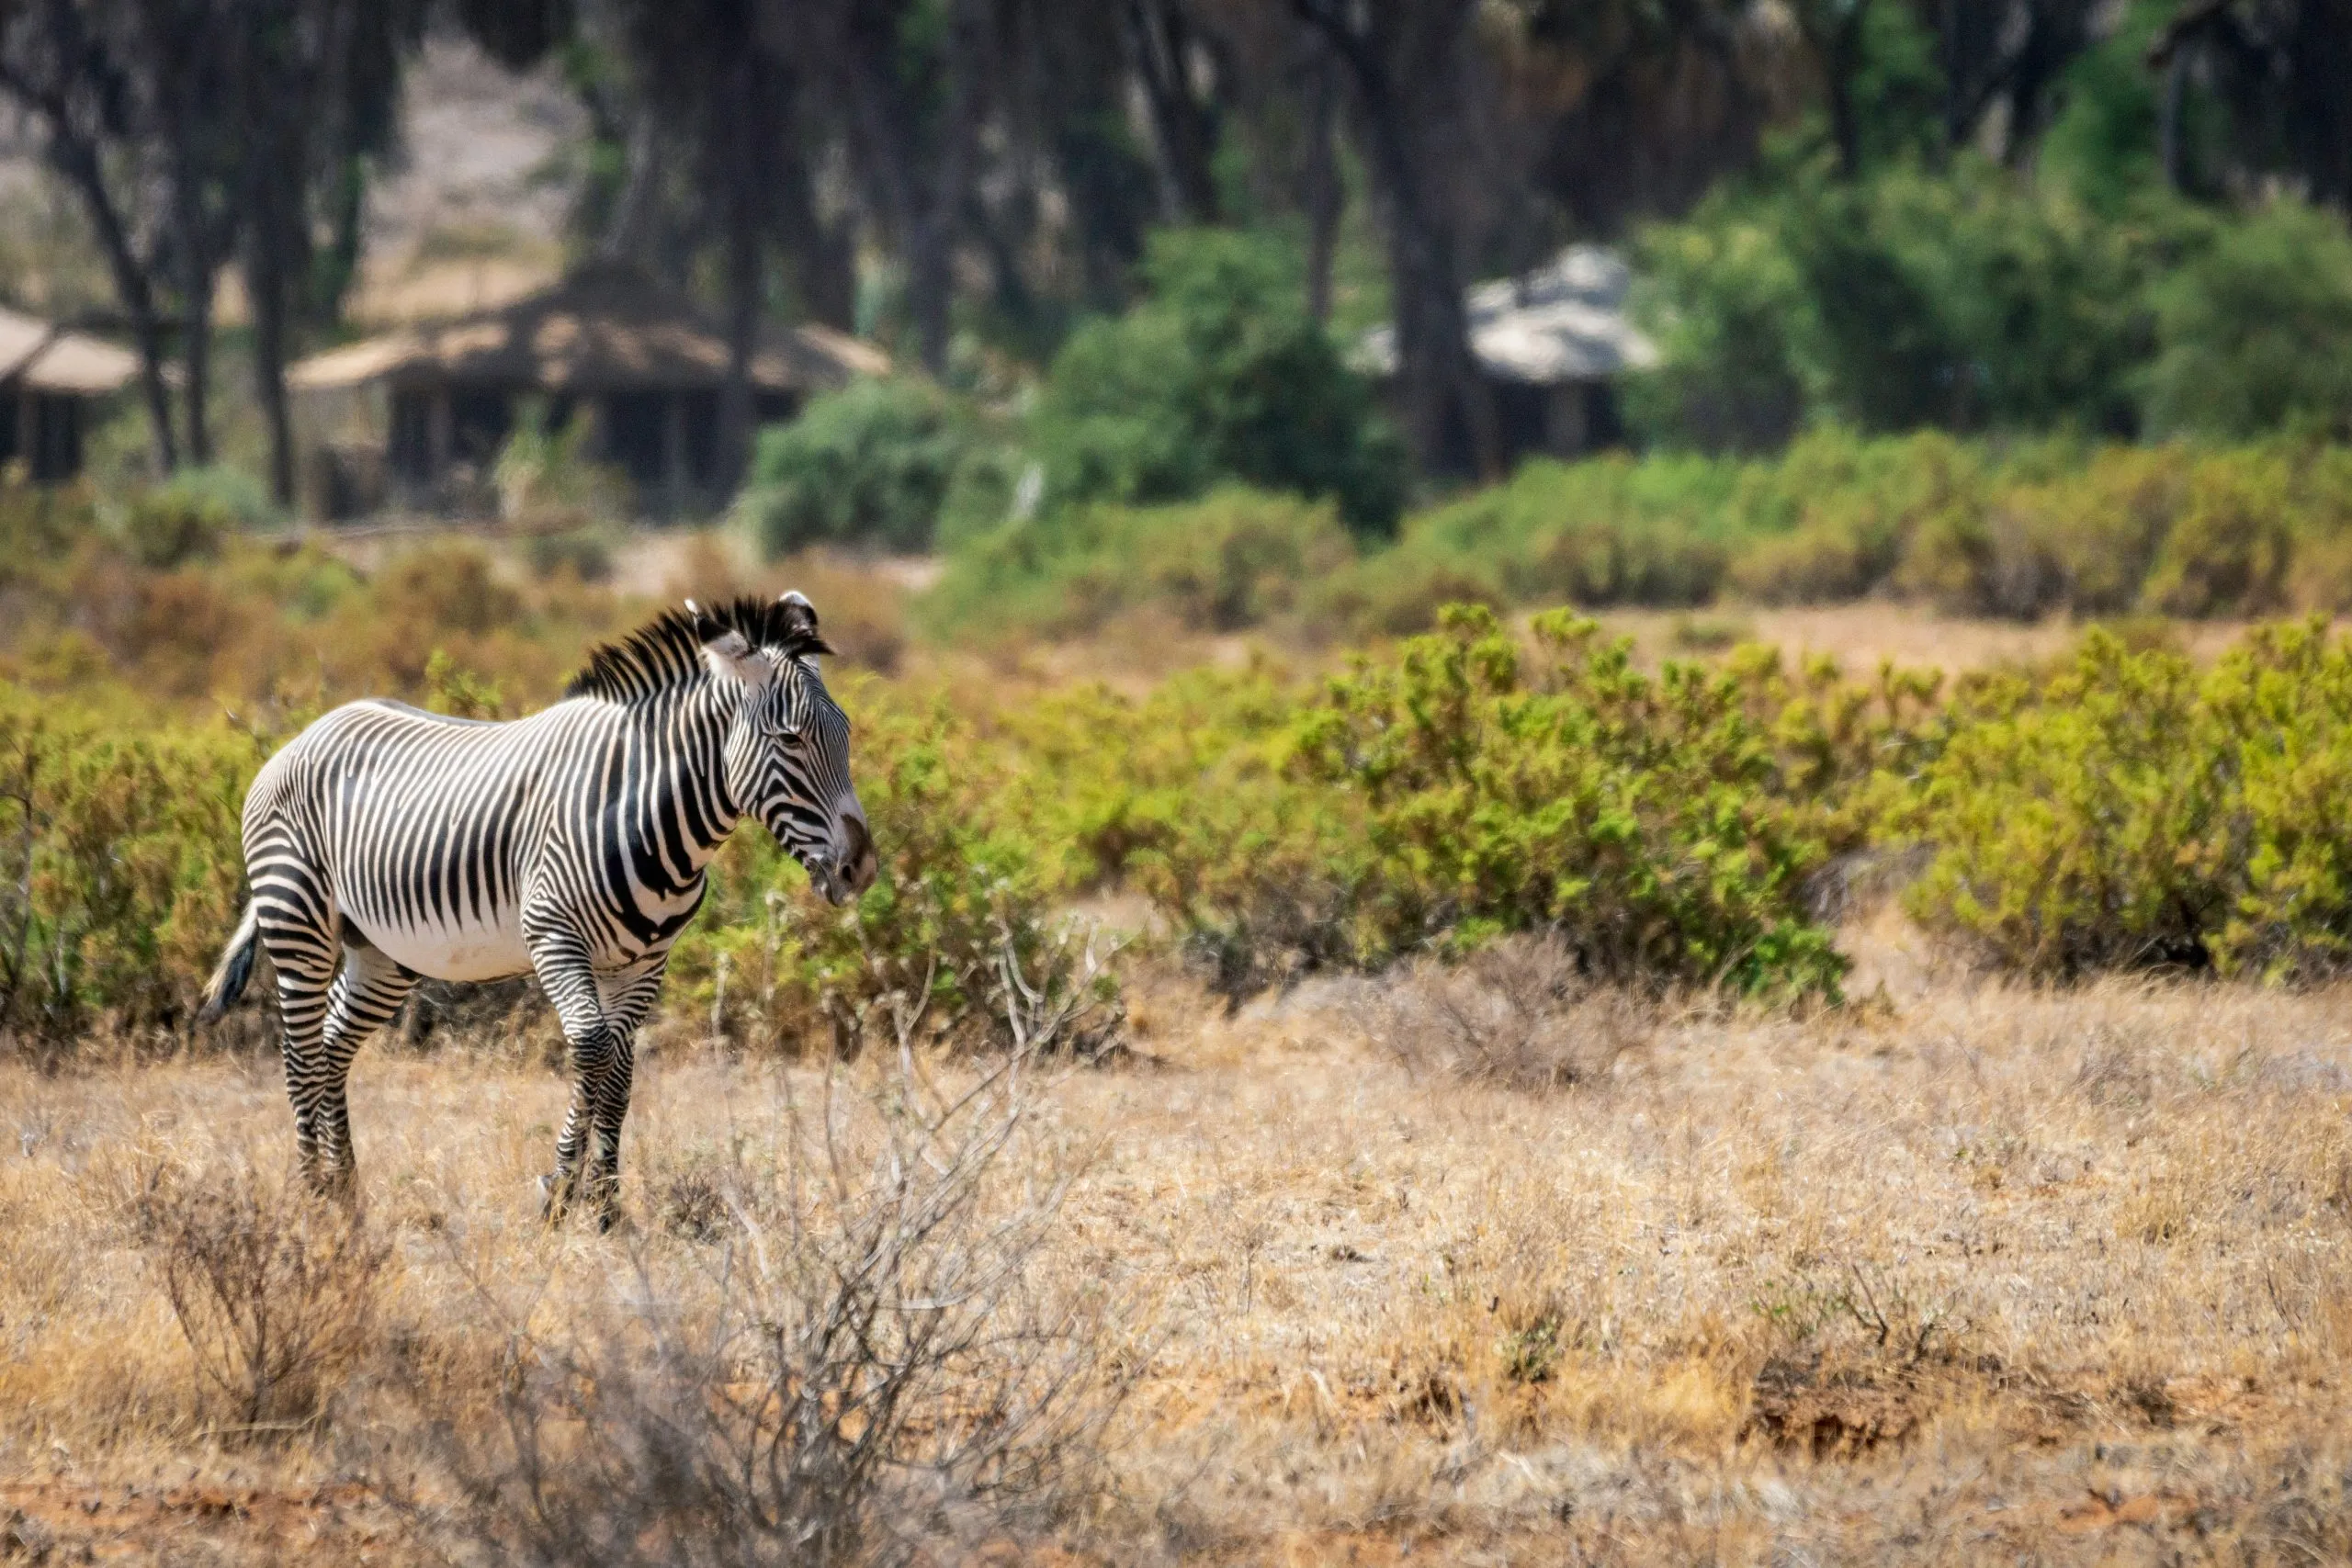 Zebra Grevys ou zebra imperial ao ar livre no deserto africano no parque nacional de Samburu, no Quénia. Safari, vida selvagem e conceito de viagem.